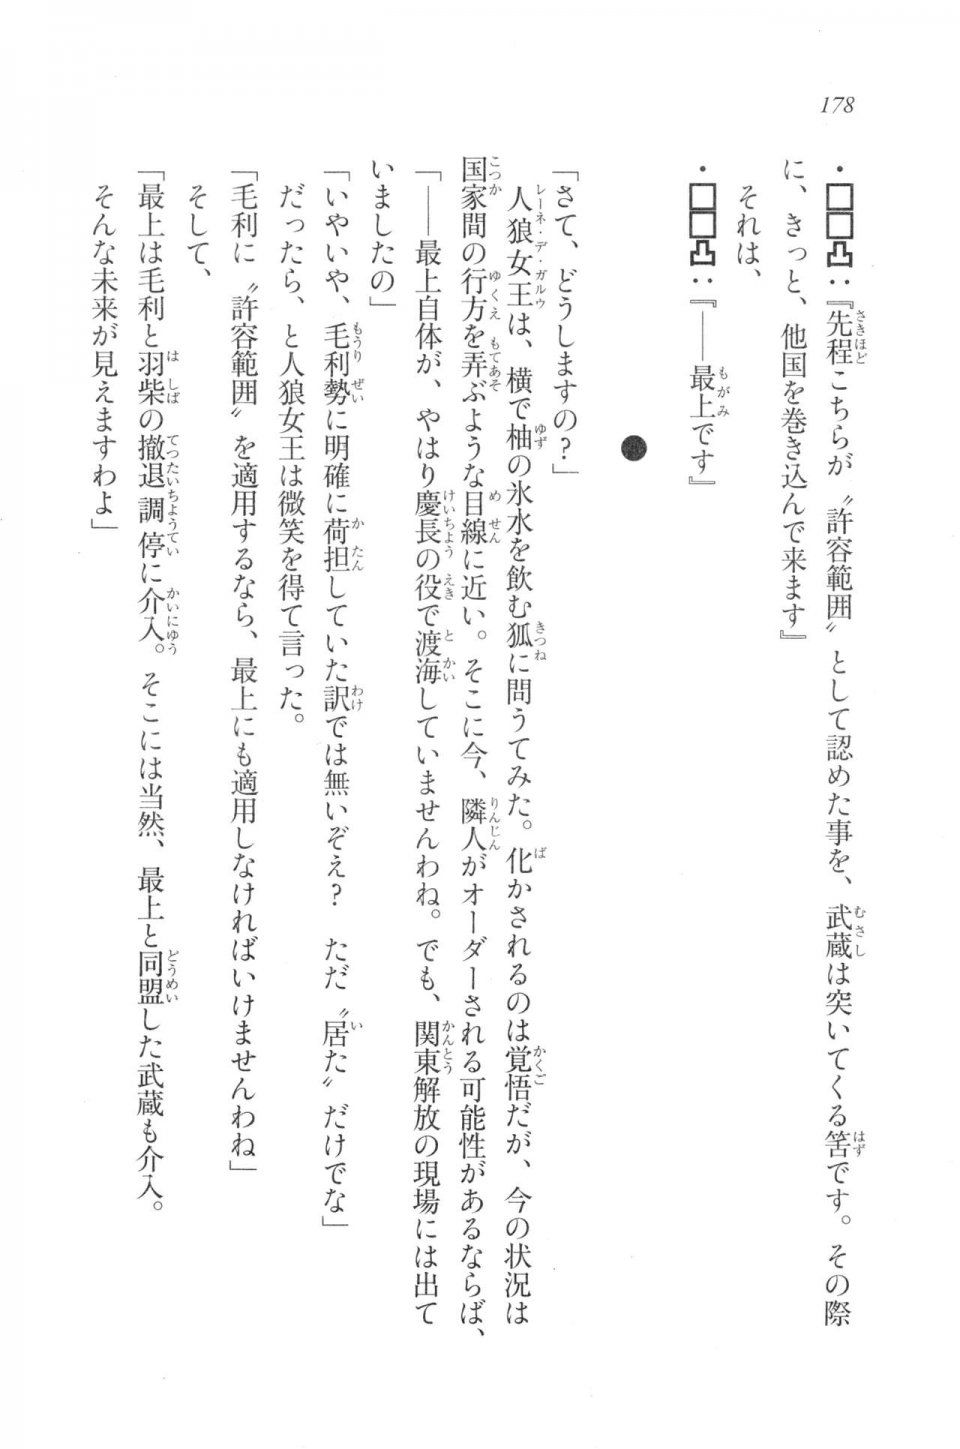 Kyoukai Senjou no Horizon LN Vol 20(8B) - Photo #178